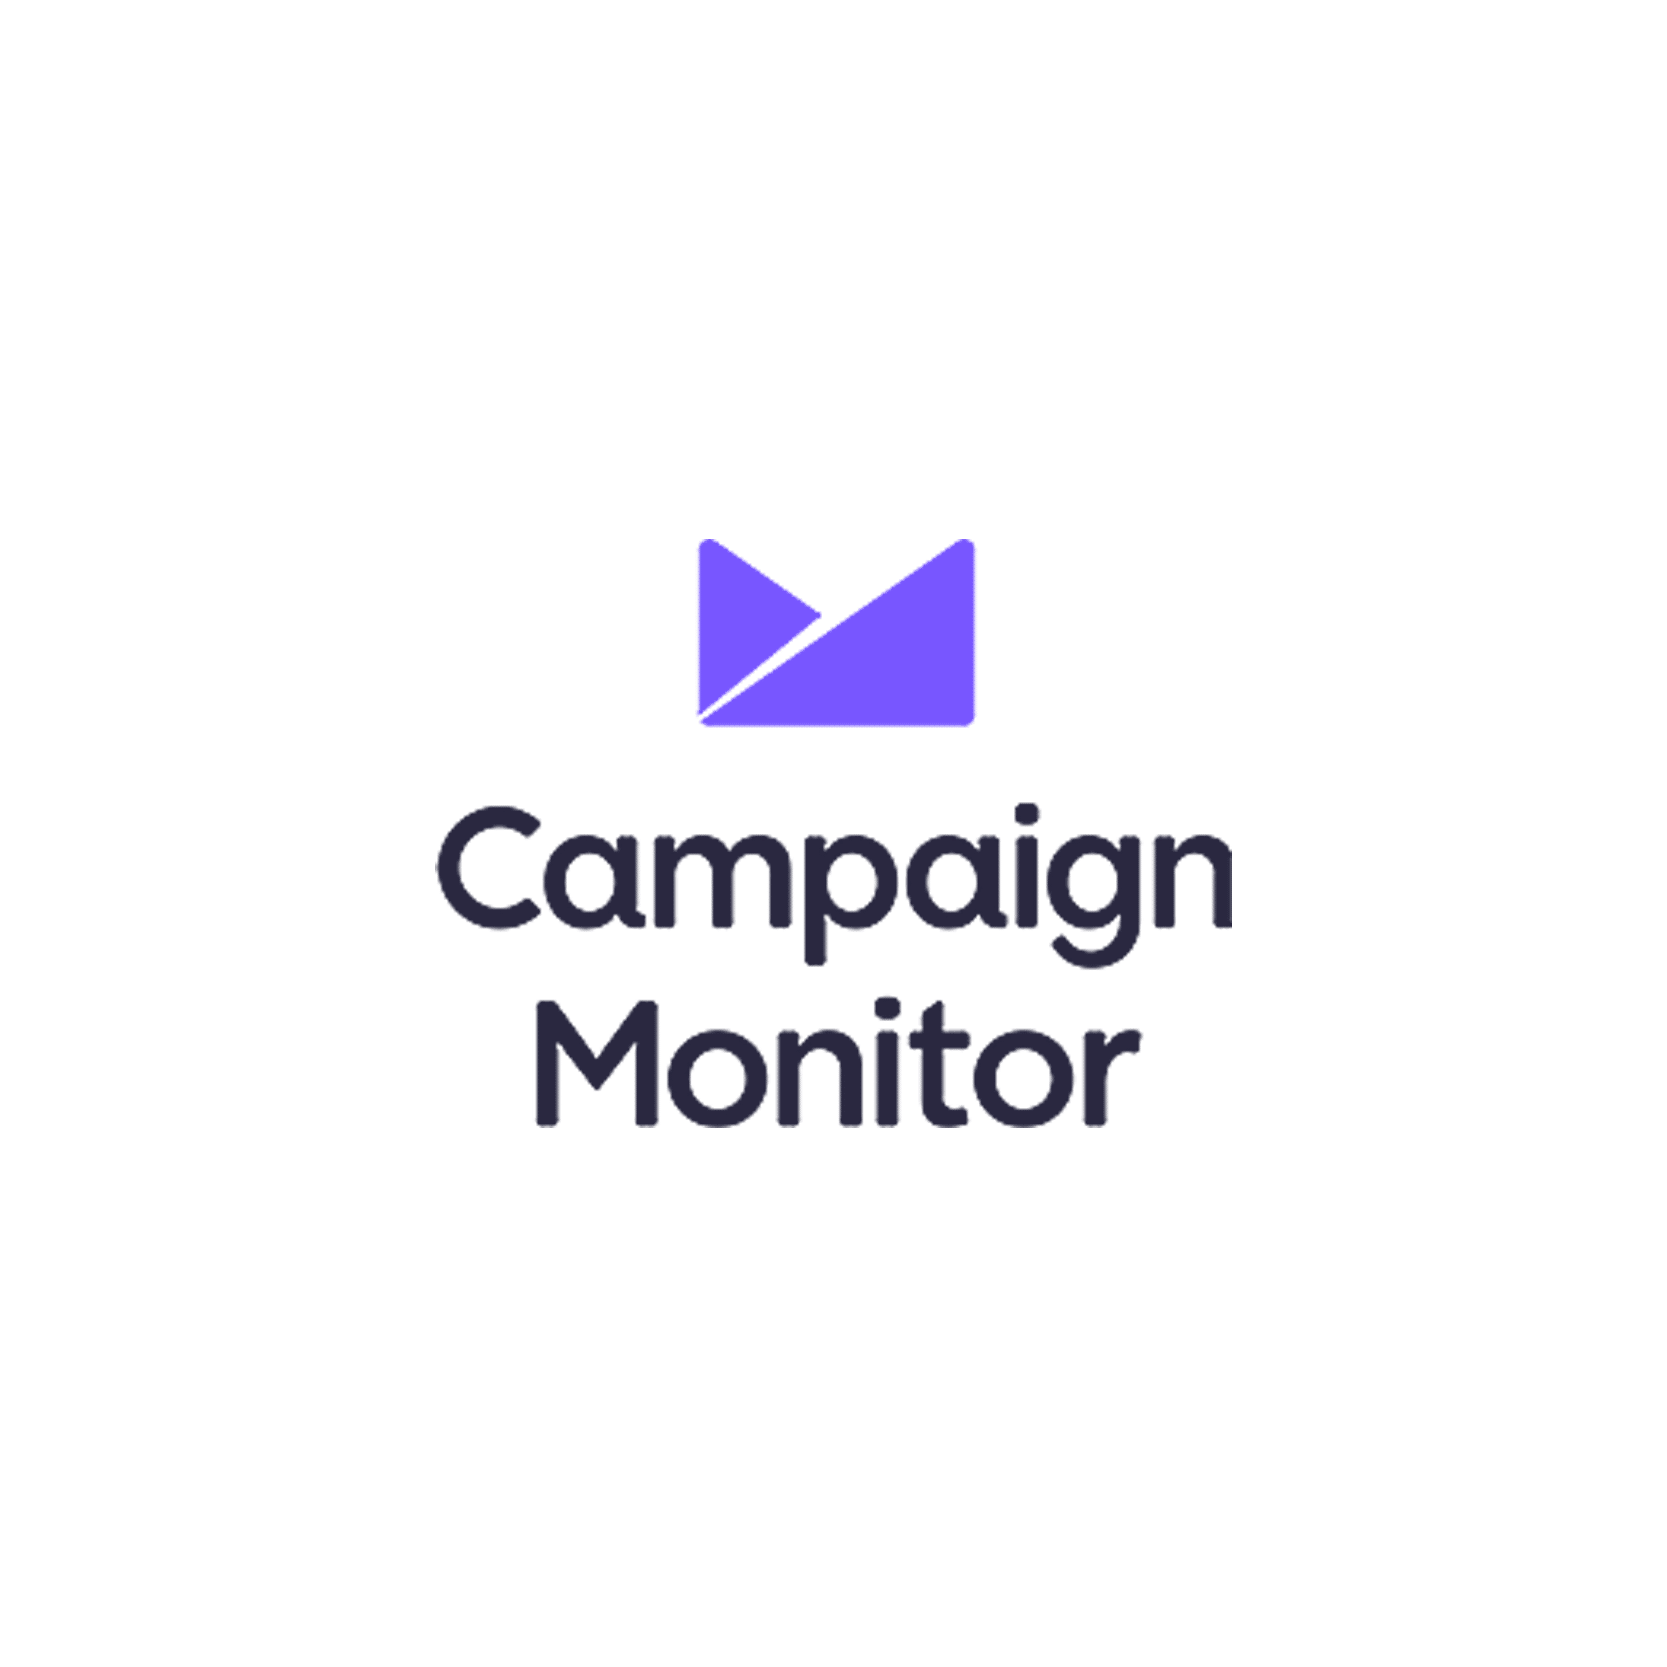 Campaign Monitor square logo